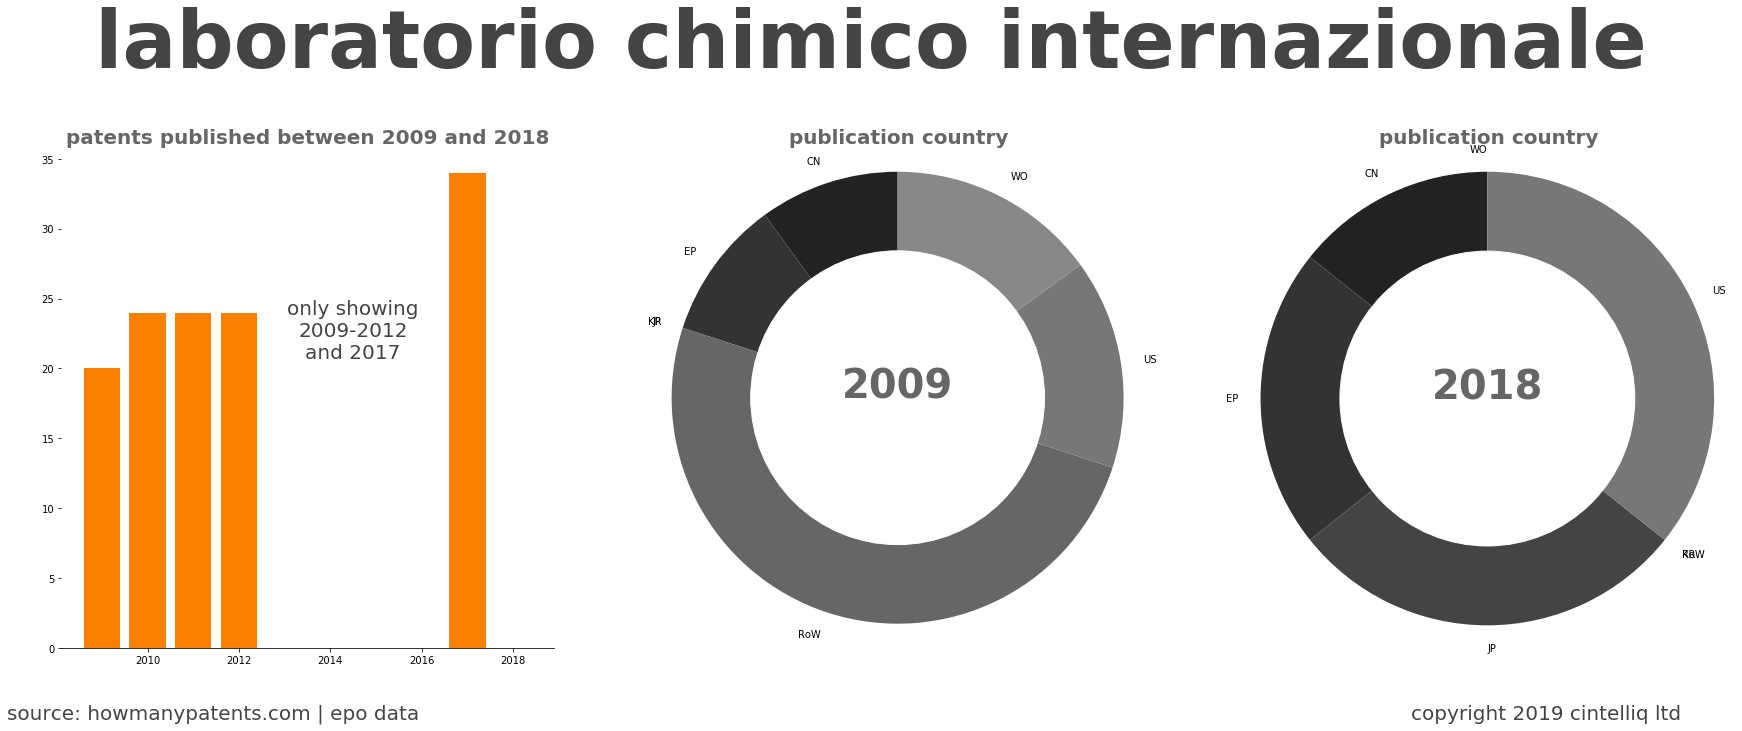 summary of patents for Laboratorio Chimico Internazionale